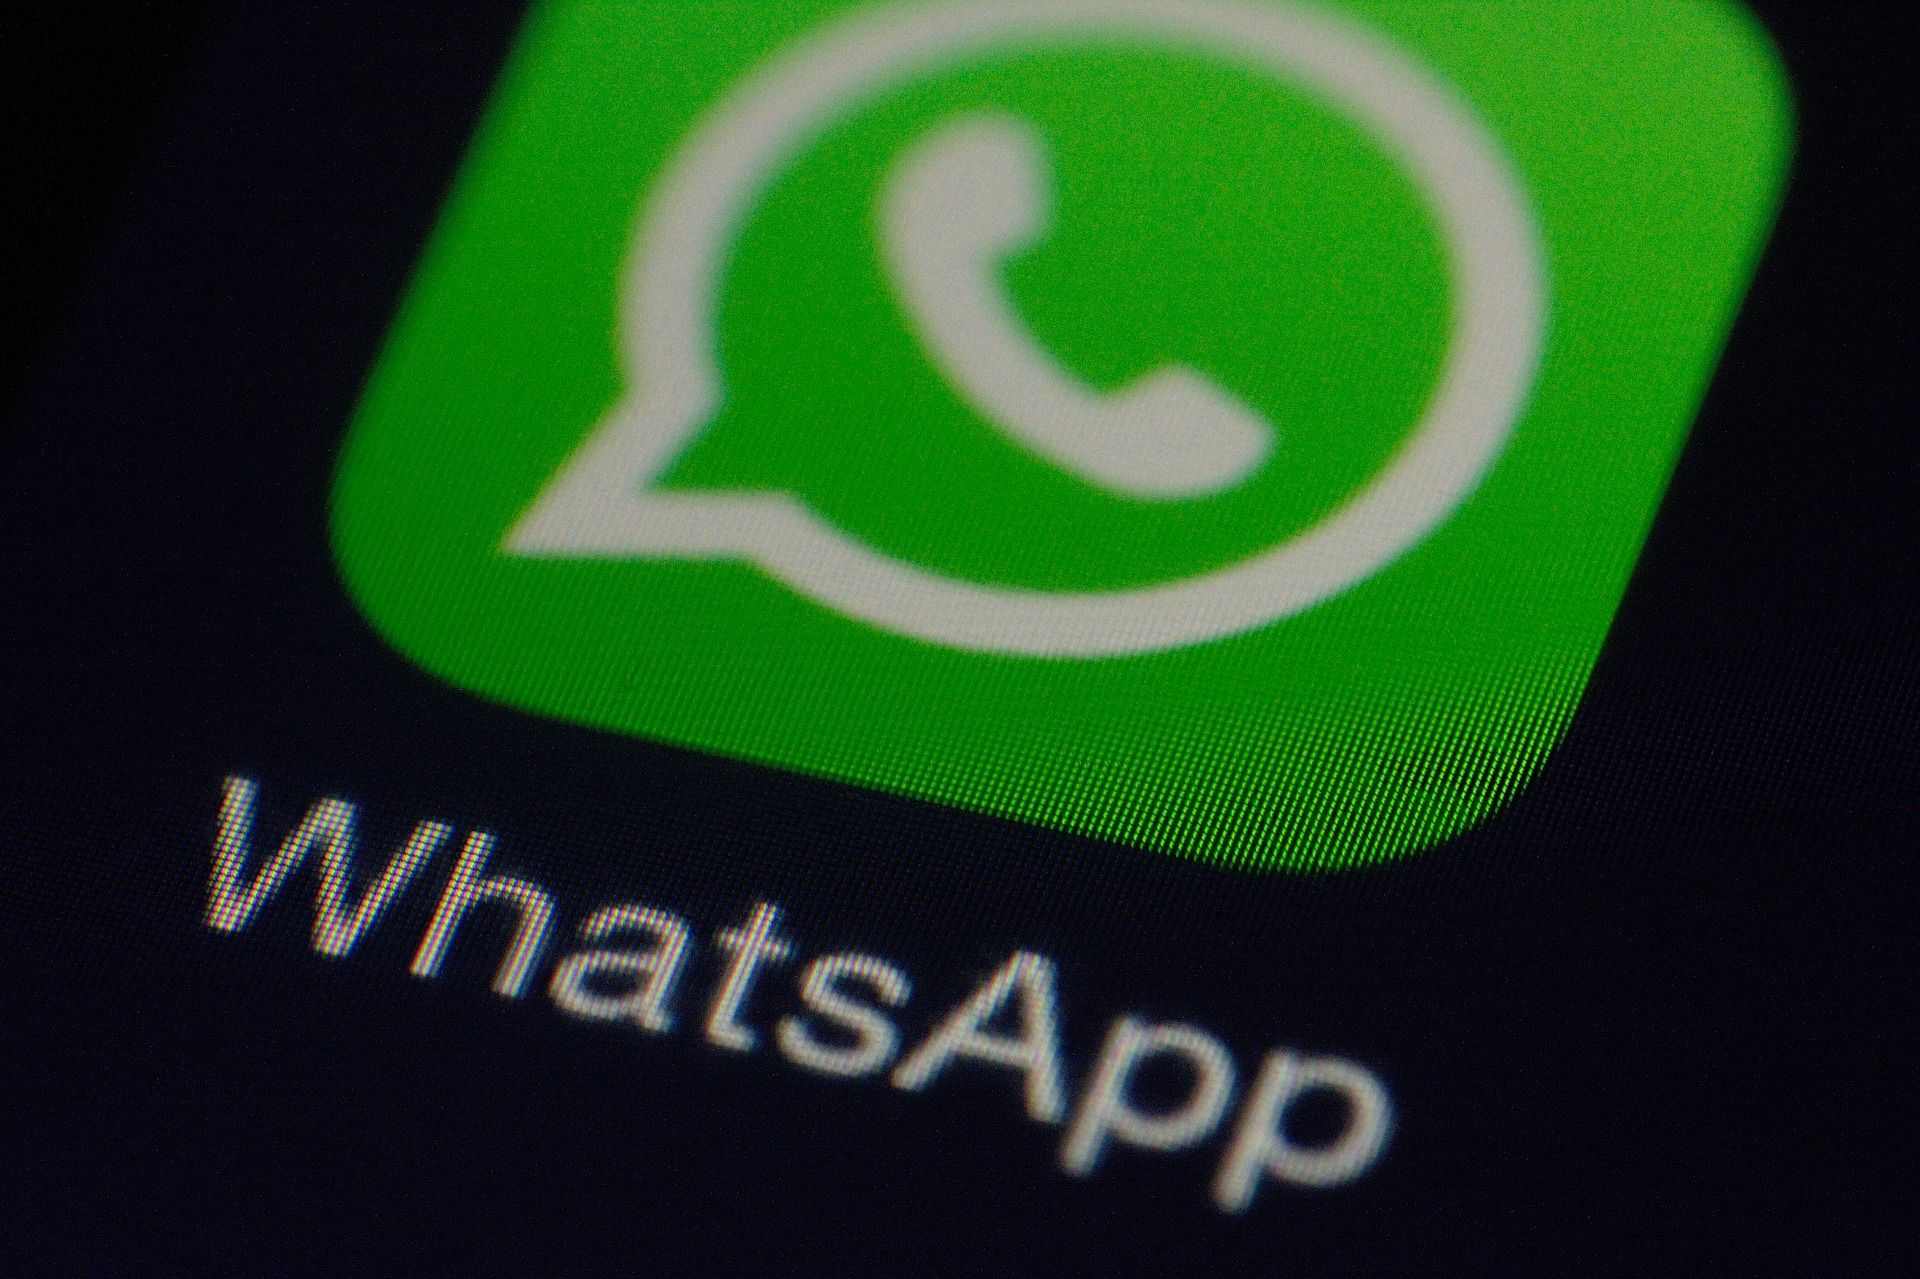 WhatsApp permitirá eliminar mensajes enviados